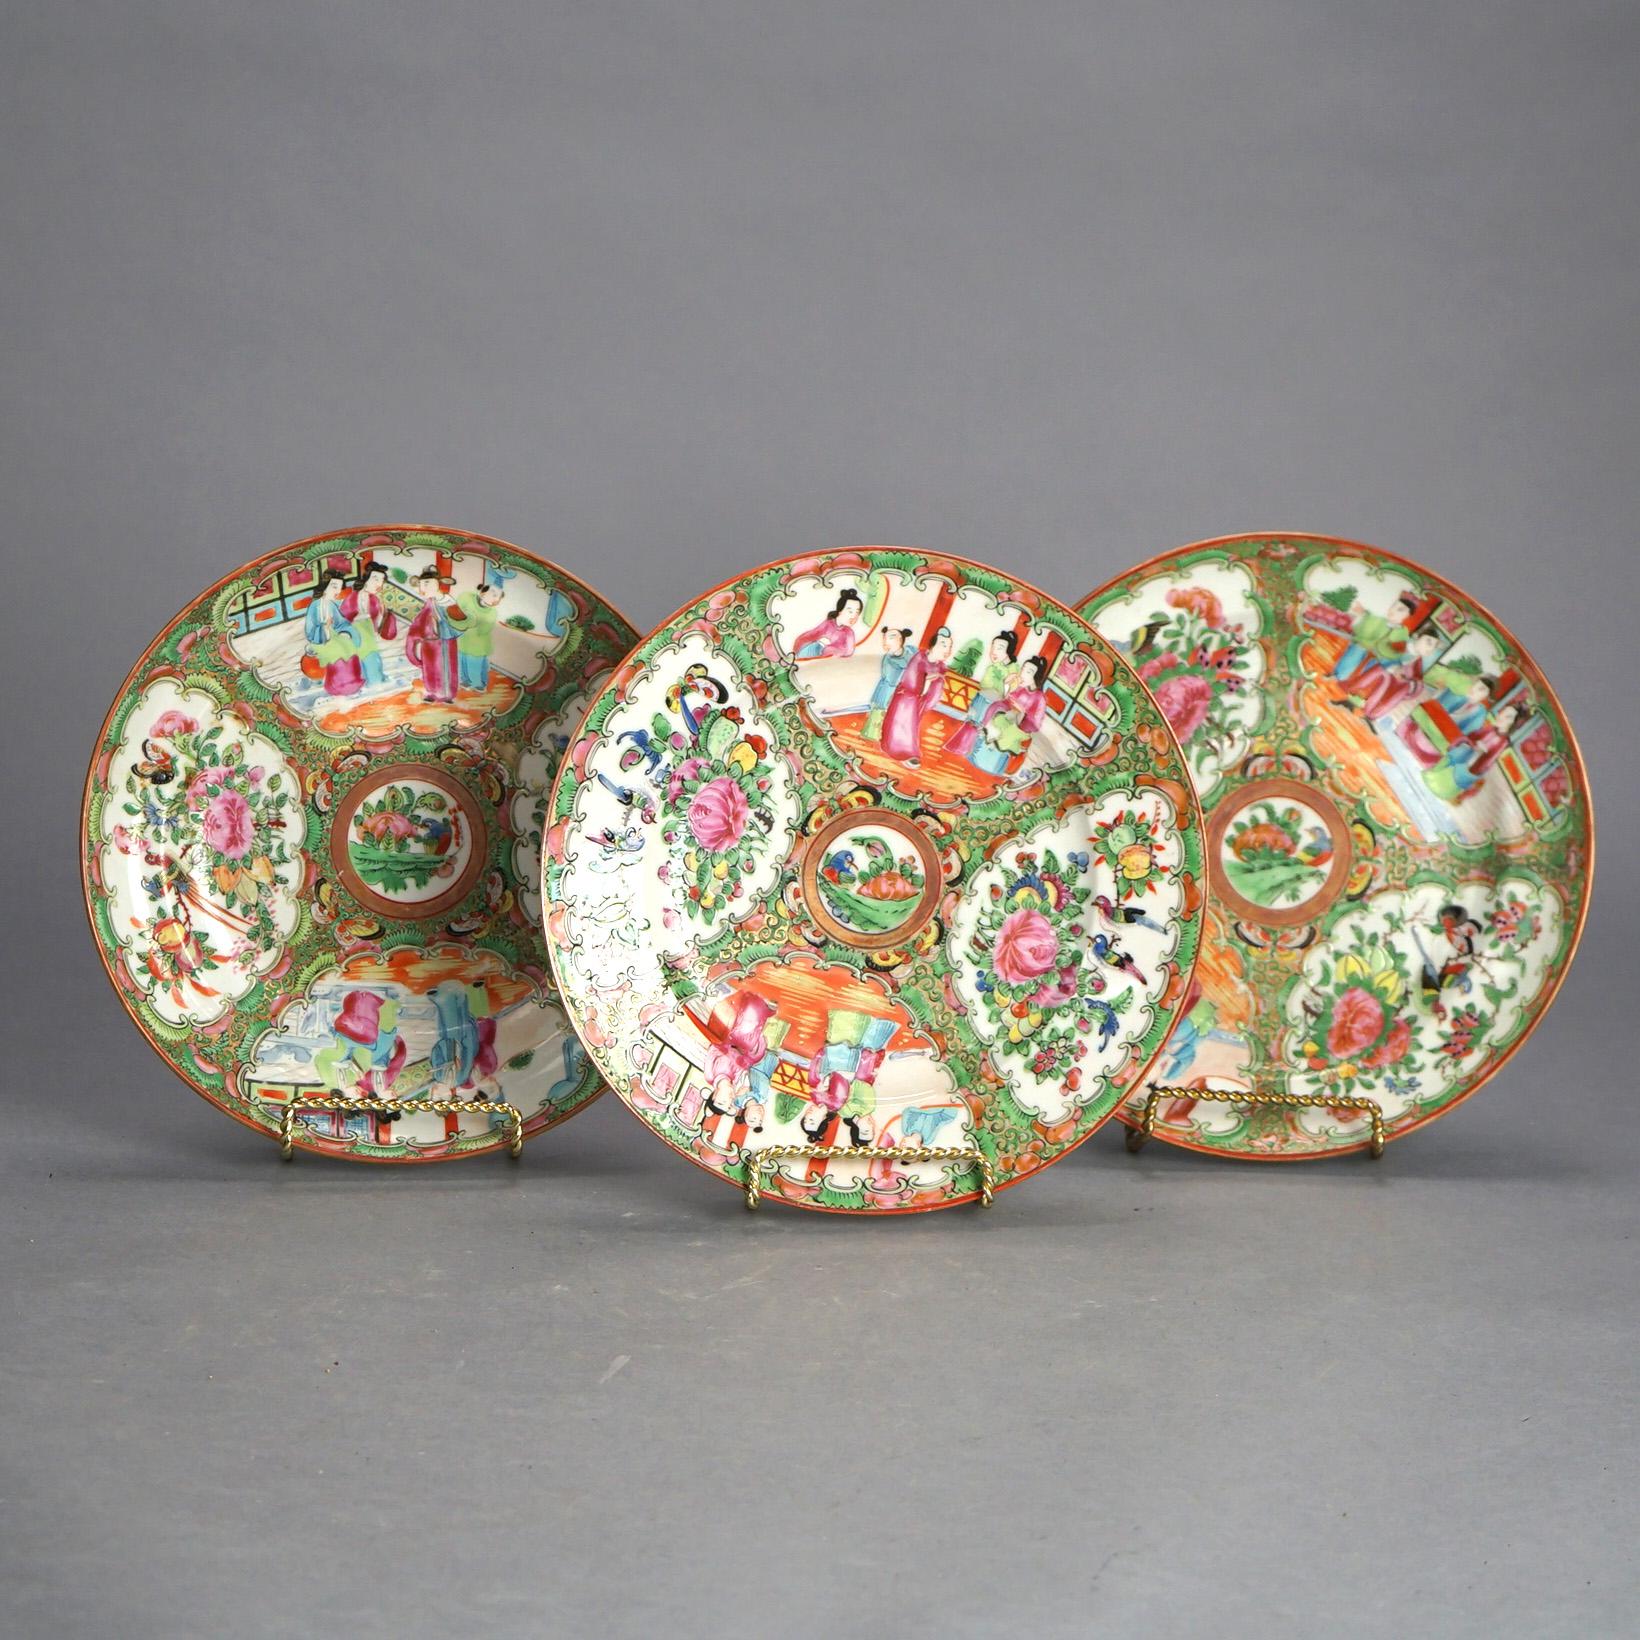 Drei antike chinesische Rosenmedaillon-Porzellanschalen mit Genre- und Gartenszenen C1900

Maße - 1,25 